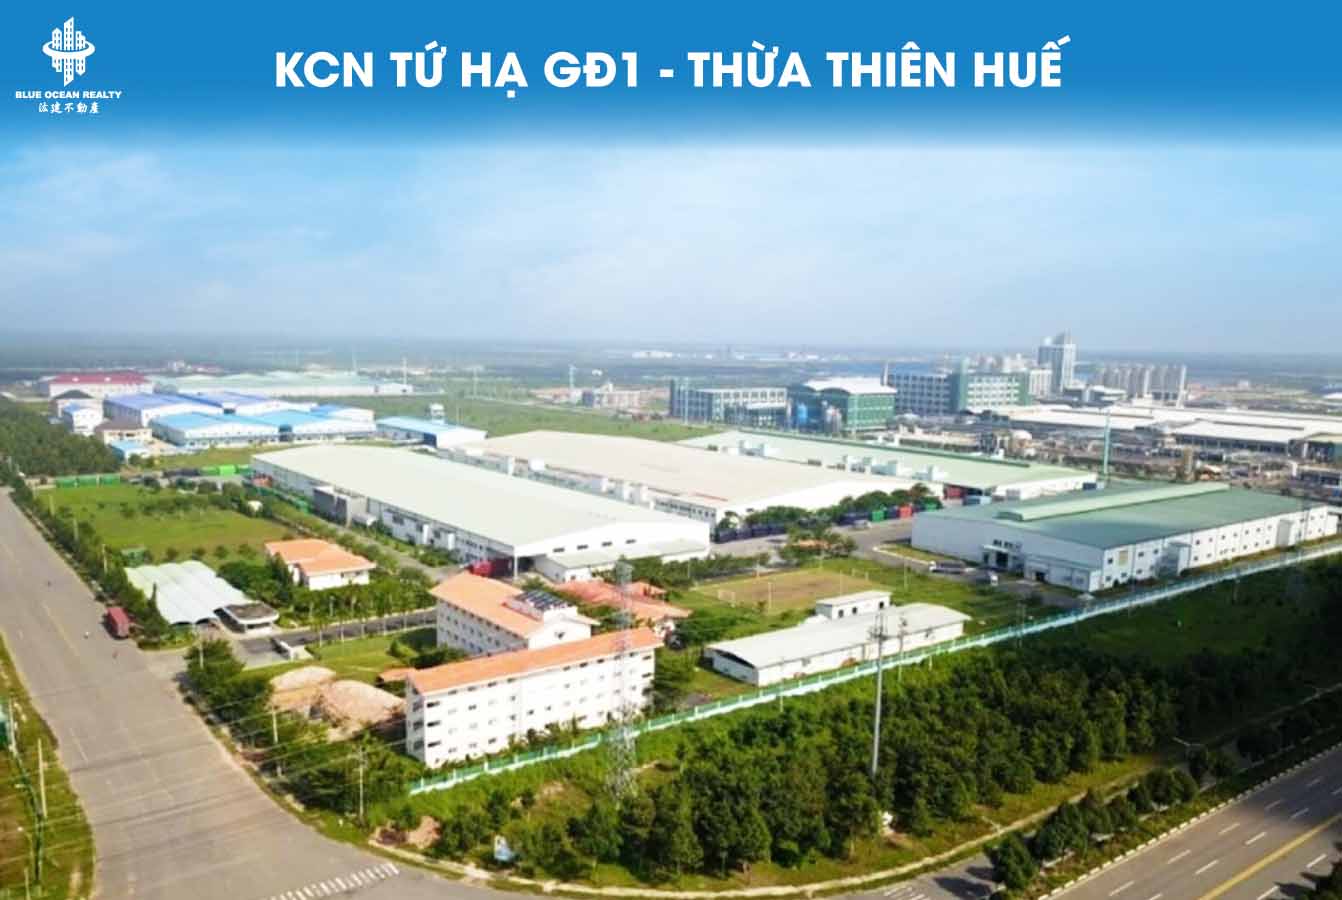 Khu công nghiệp Tứ Hạ GĐ1 - Thừa Thiên Huế